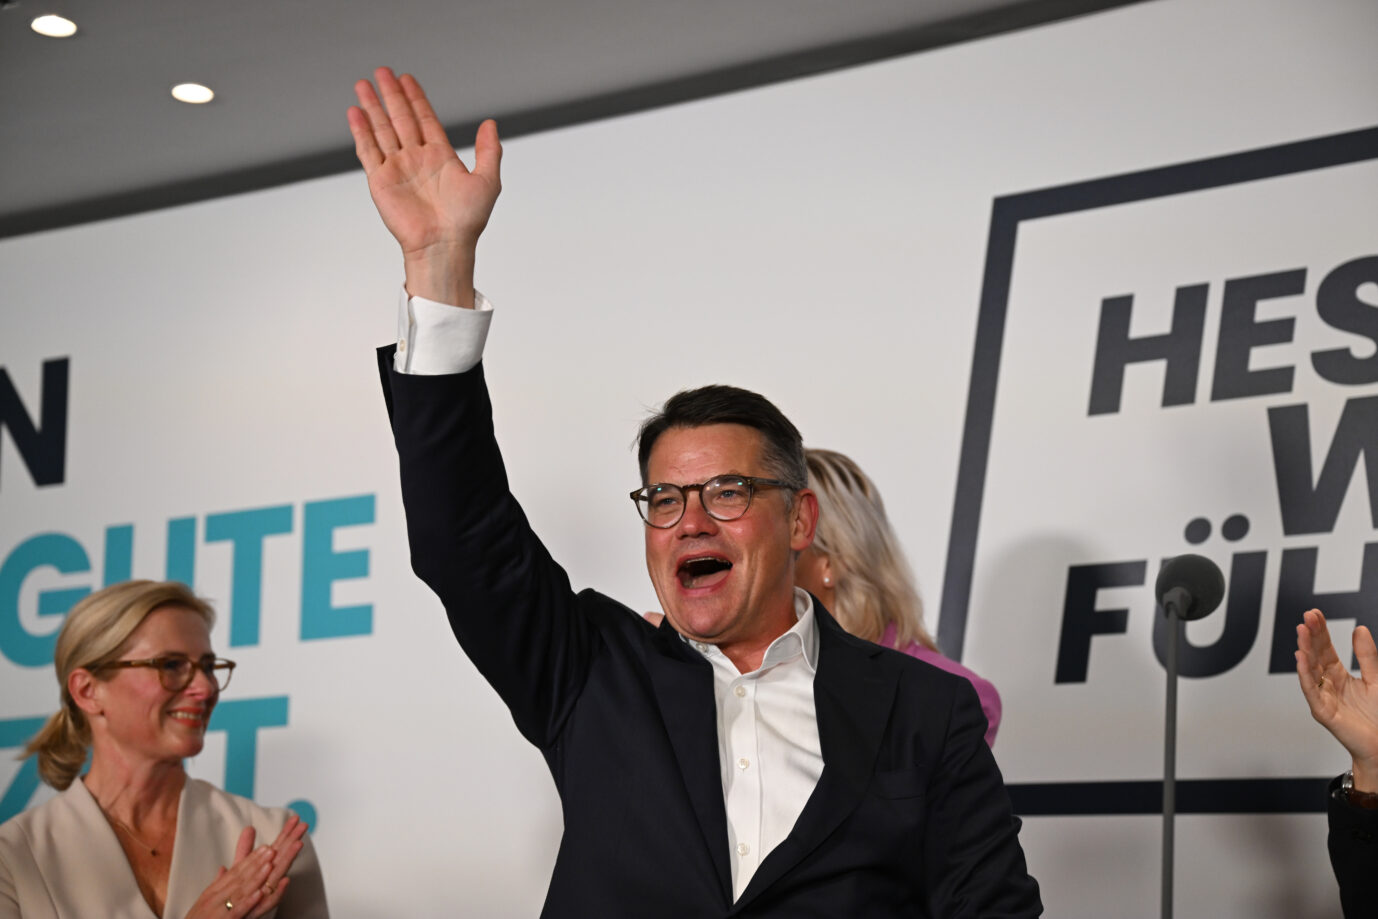 Boris Rhein, Spitzenkandidat der CDU und Ministerpräsident von Hessen, ist der große Wahlsieger nach den Landtagswahlen in Hessen und Bayern Foto: picture alliance/dpa | Arne Dedert